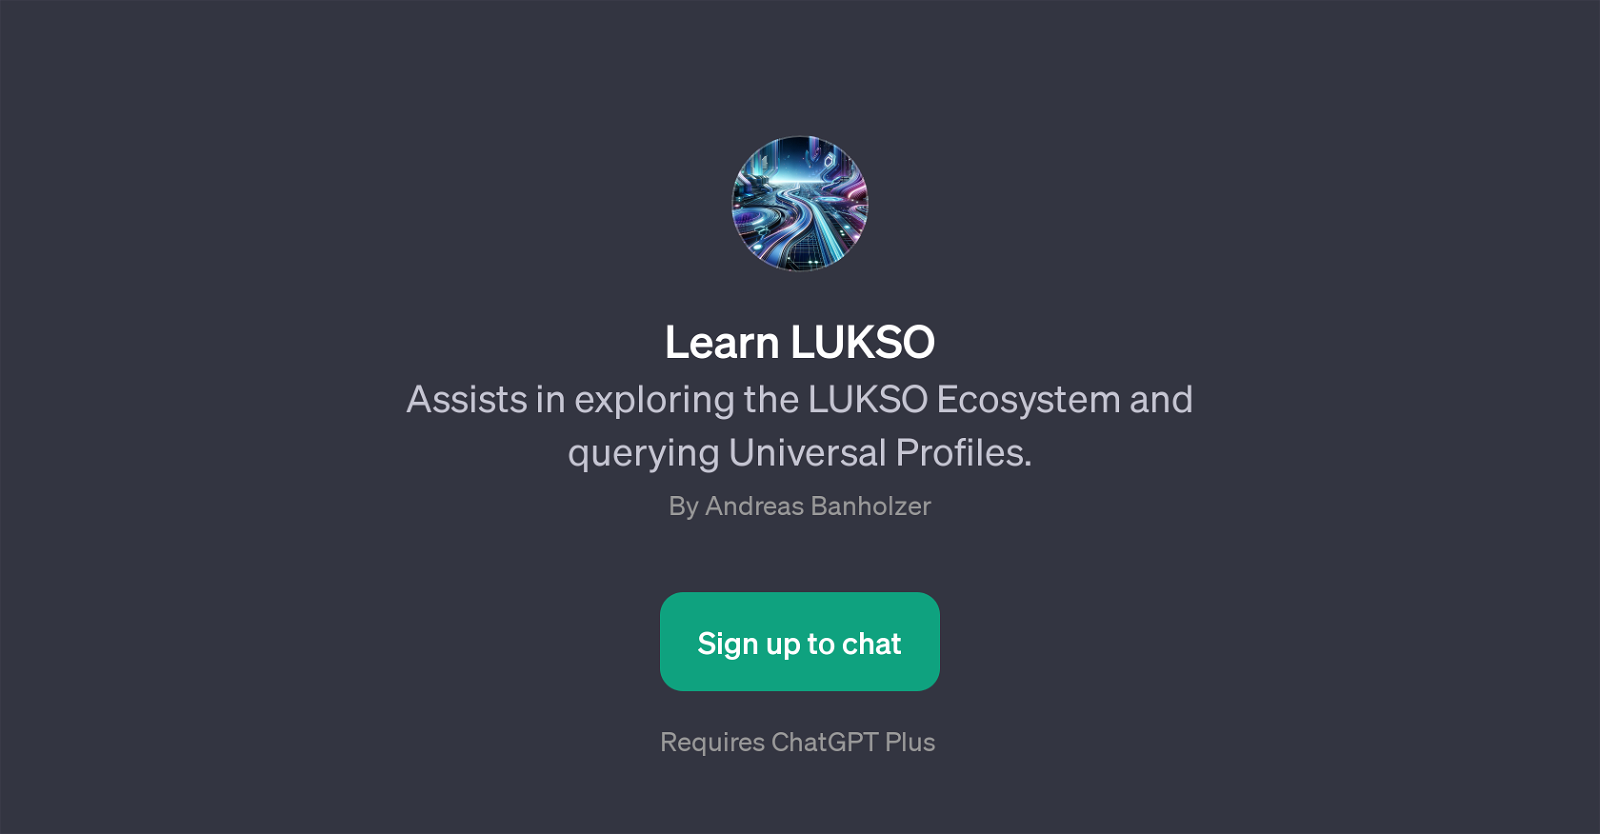 Learn LUKSO website